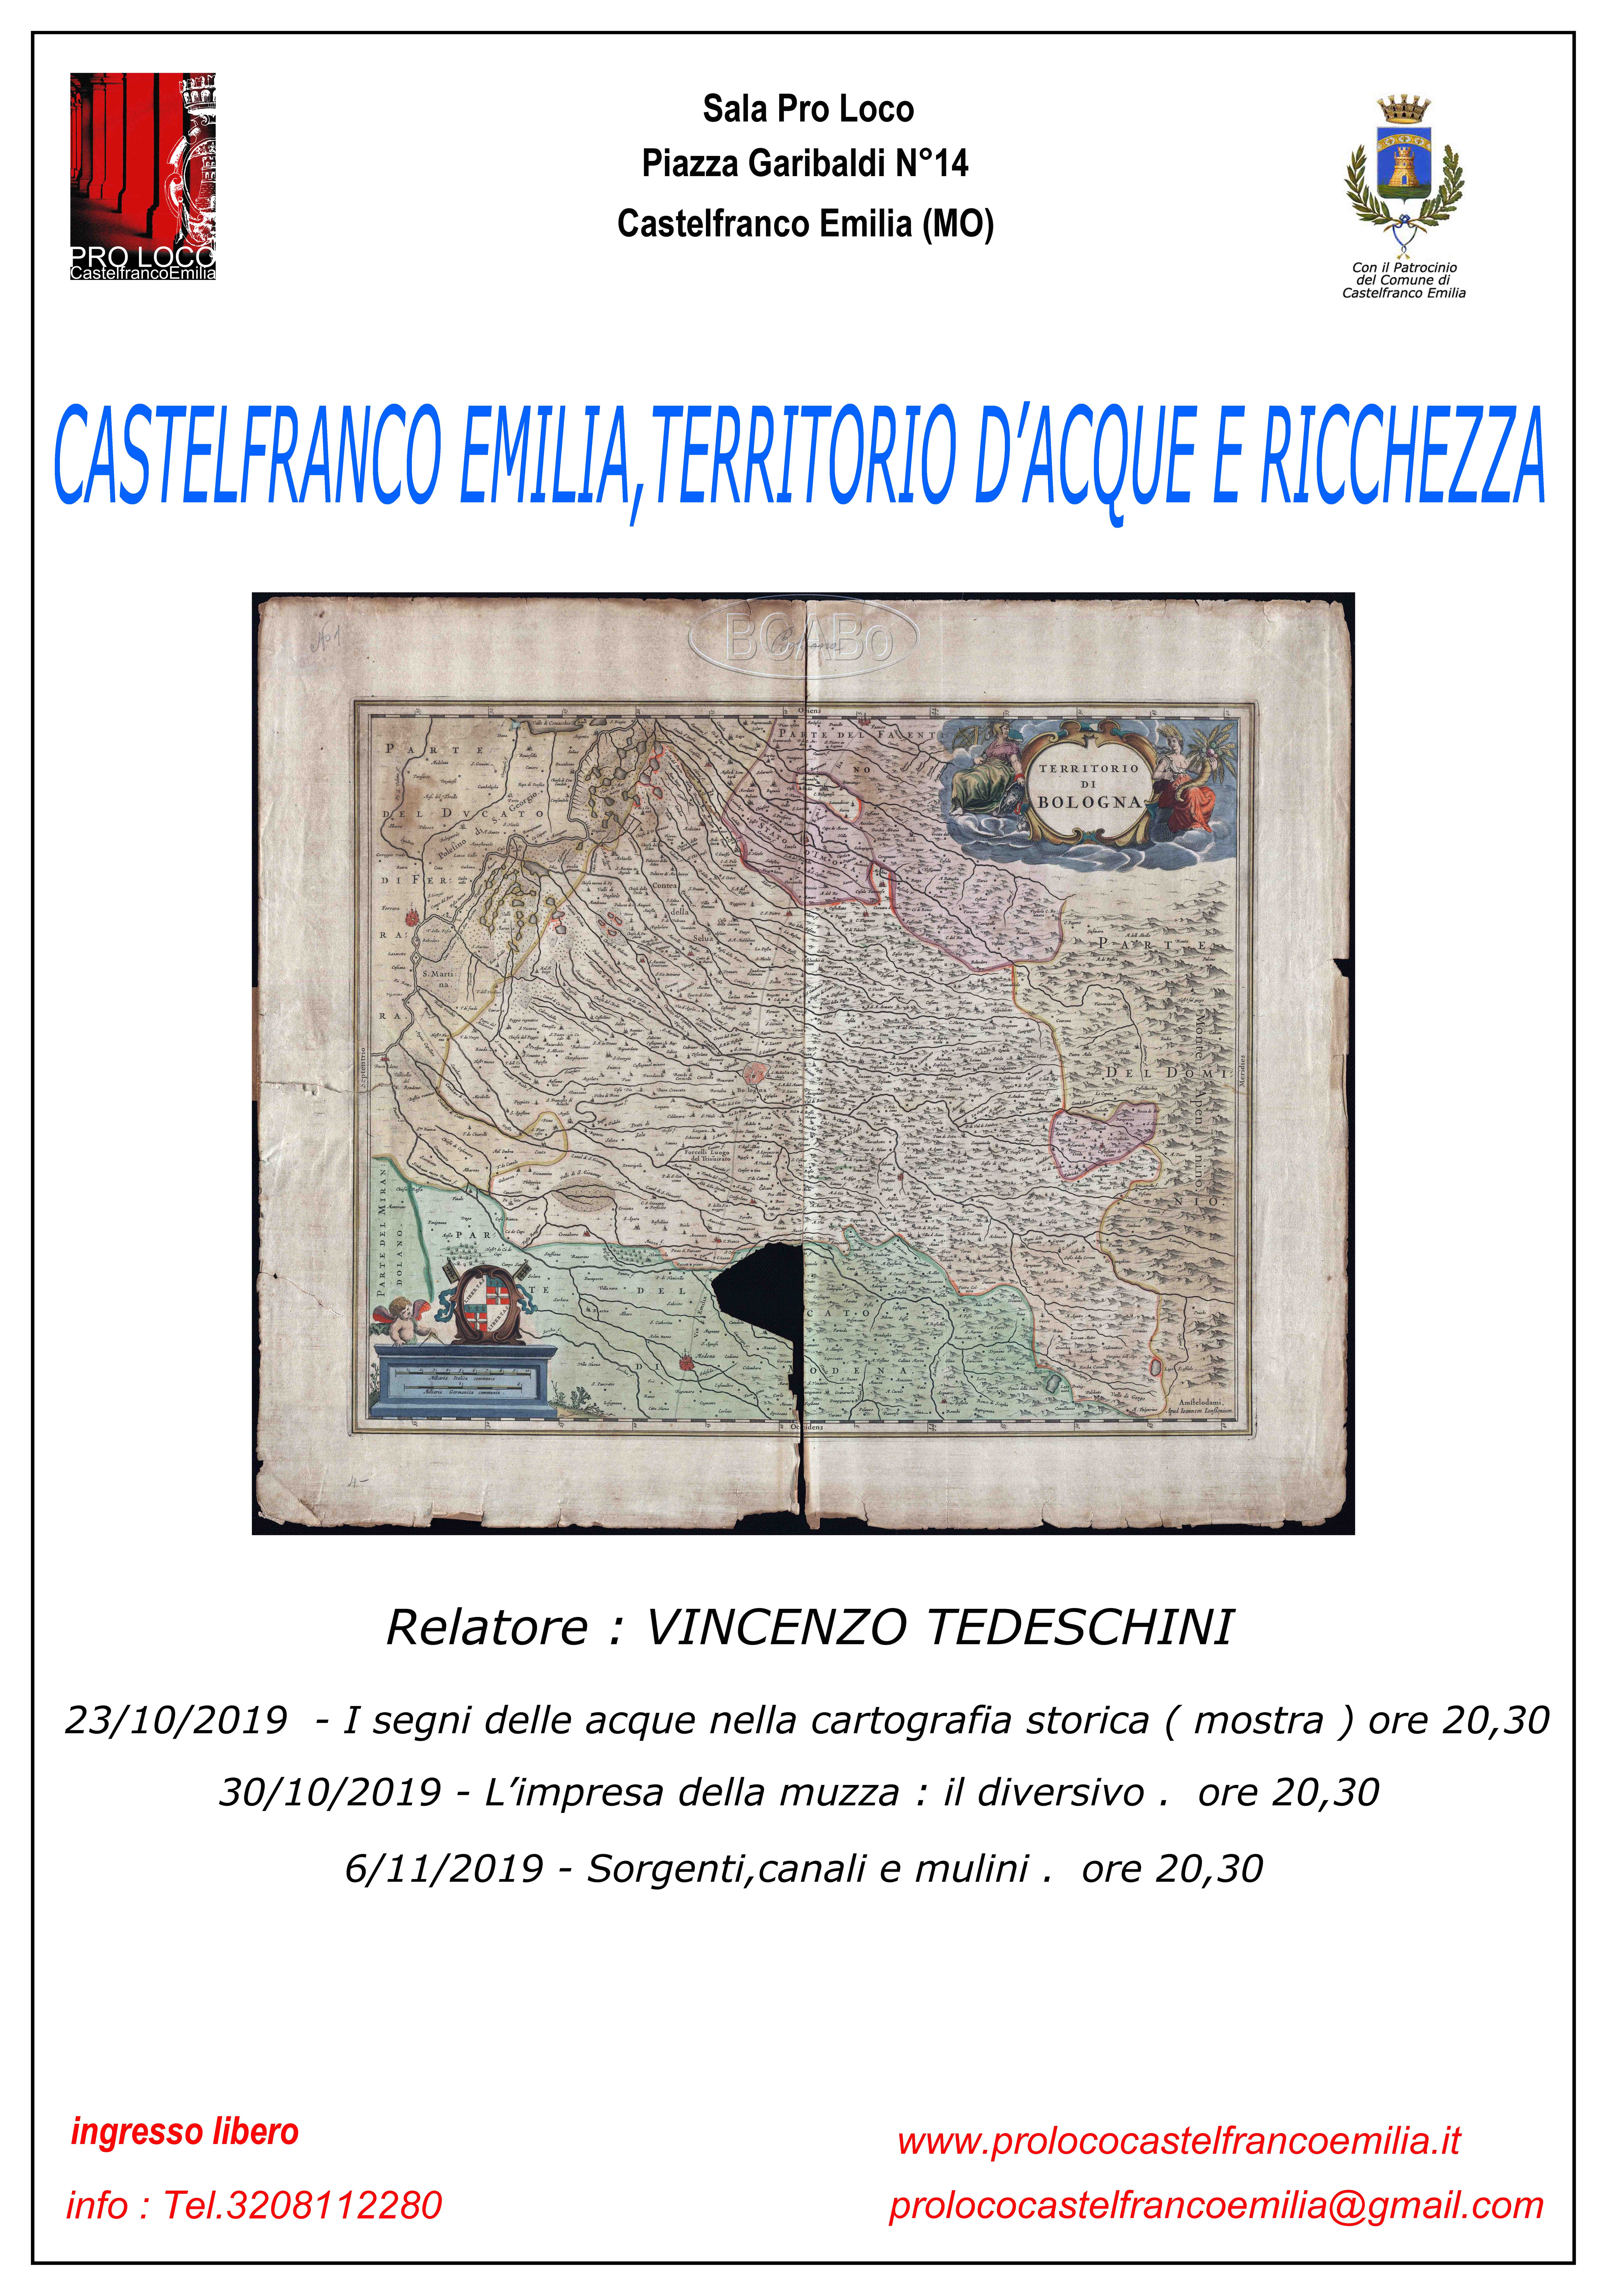 Castelfranco Emilia, territorio d'acqua e ricchezza